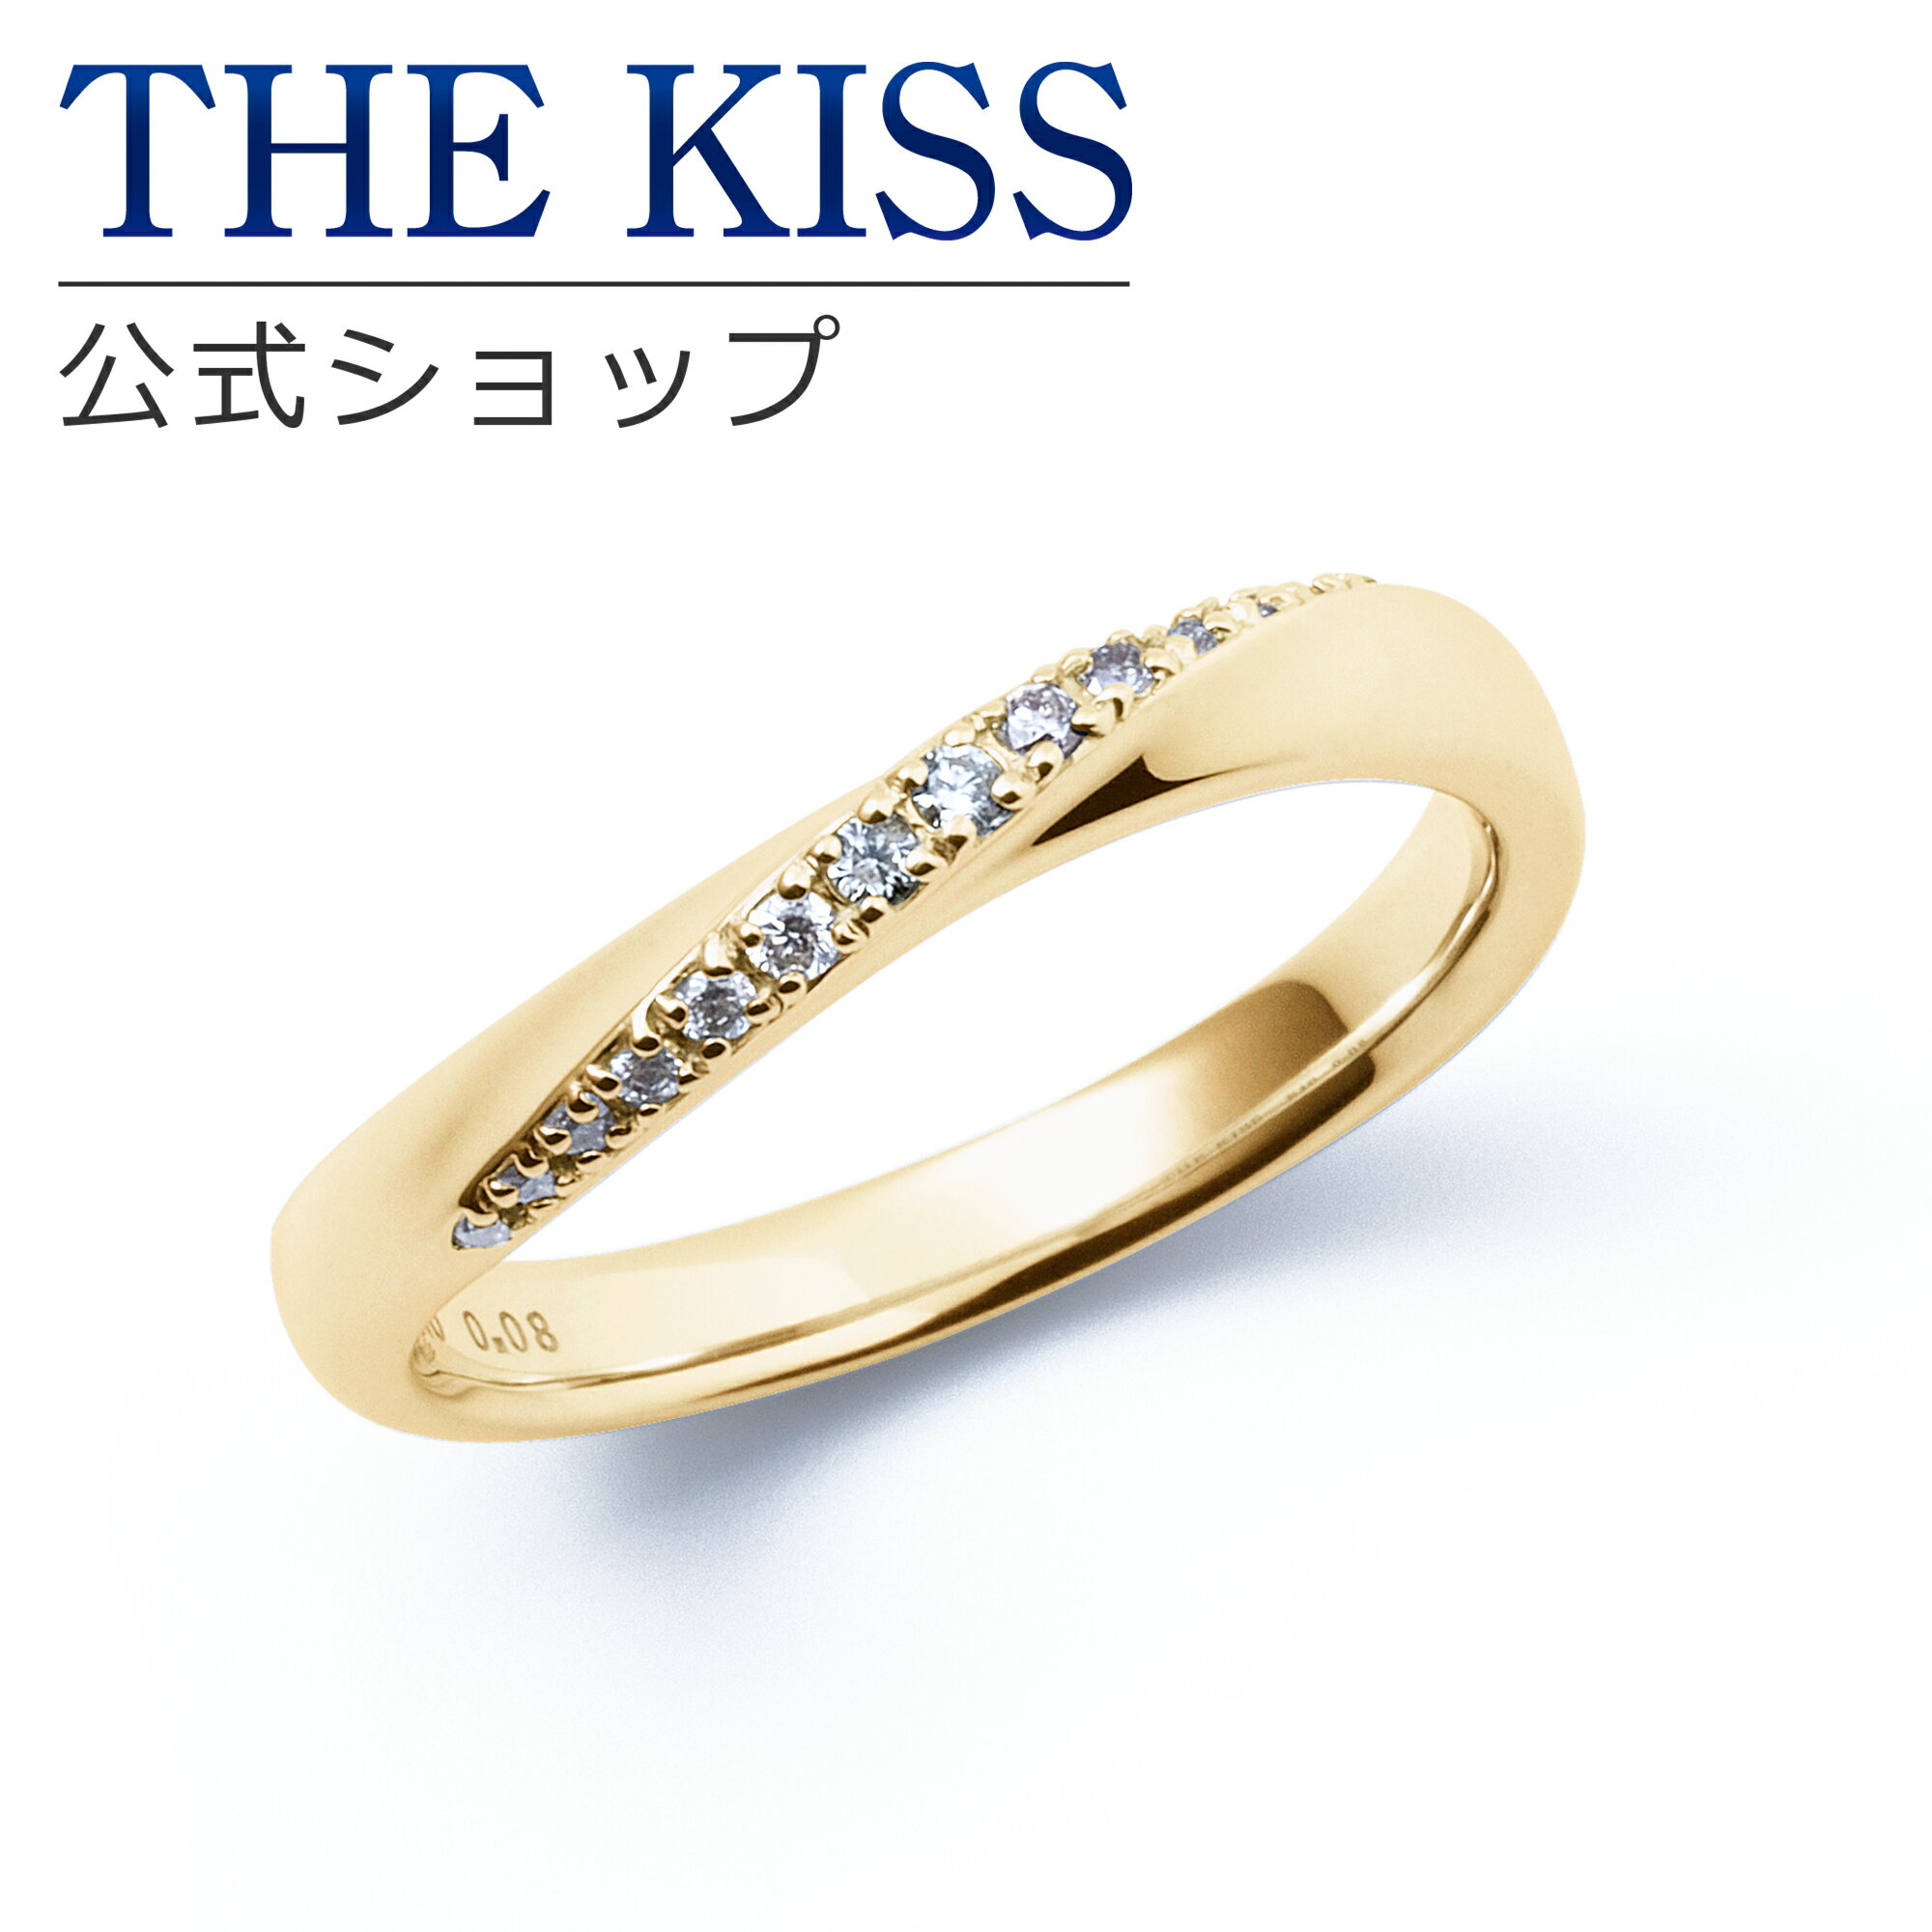 【ラッピング無料】【刻印無料】【THE KISS Anniversary】 THE KISS 公式ショップ K10 イエローゴールド マリッジ リング 結婚指輪 ペアリング （ レディース 単品 ） yg カップル 人気 ジュエリーブランド THEKISS ザキッス 指輪 7581122031 シンプル 女性 ブライダル